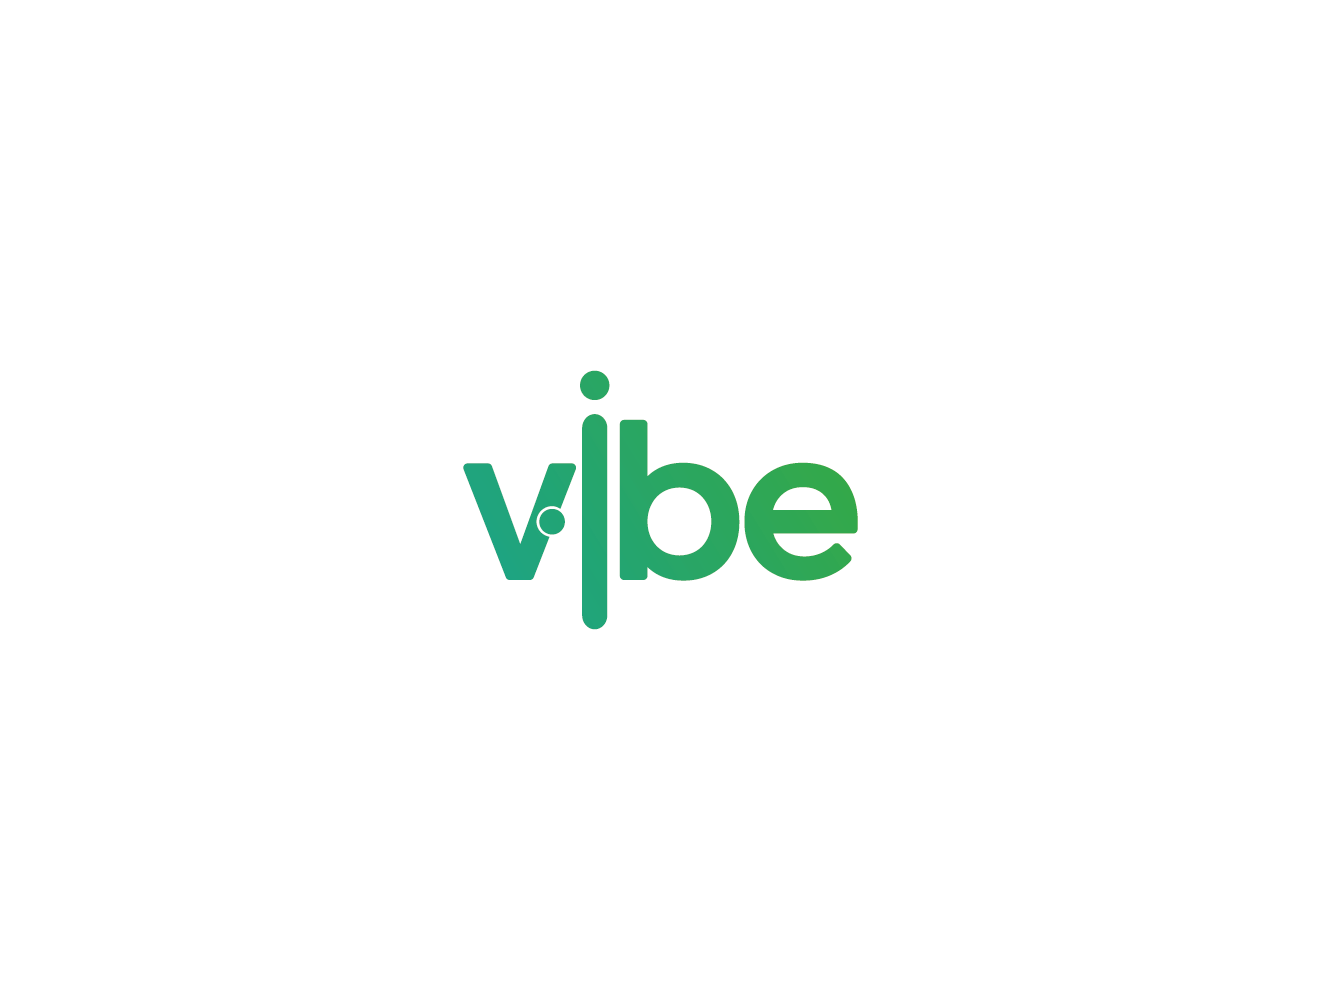 Vibeelogo Design - Et Grønt Logo Med Ordet Vibee